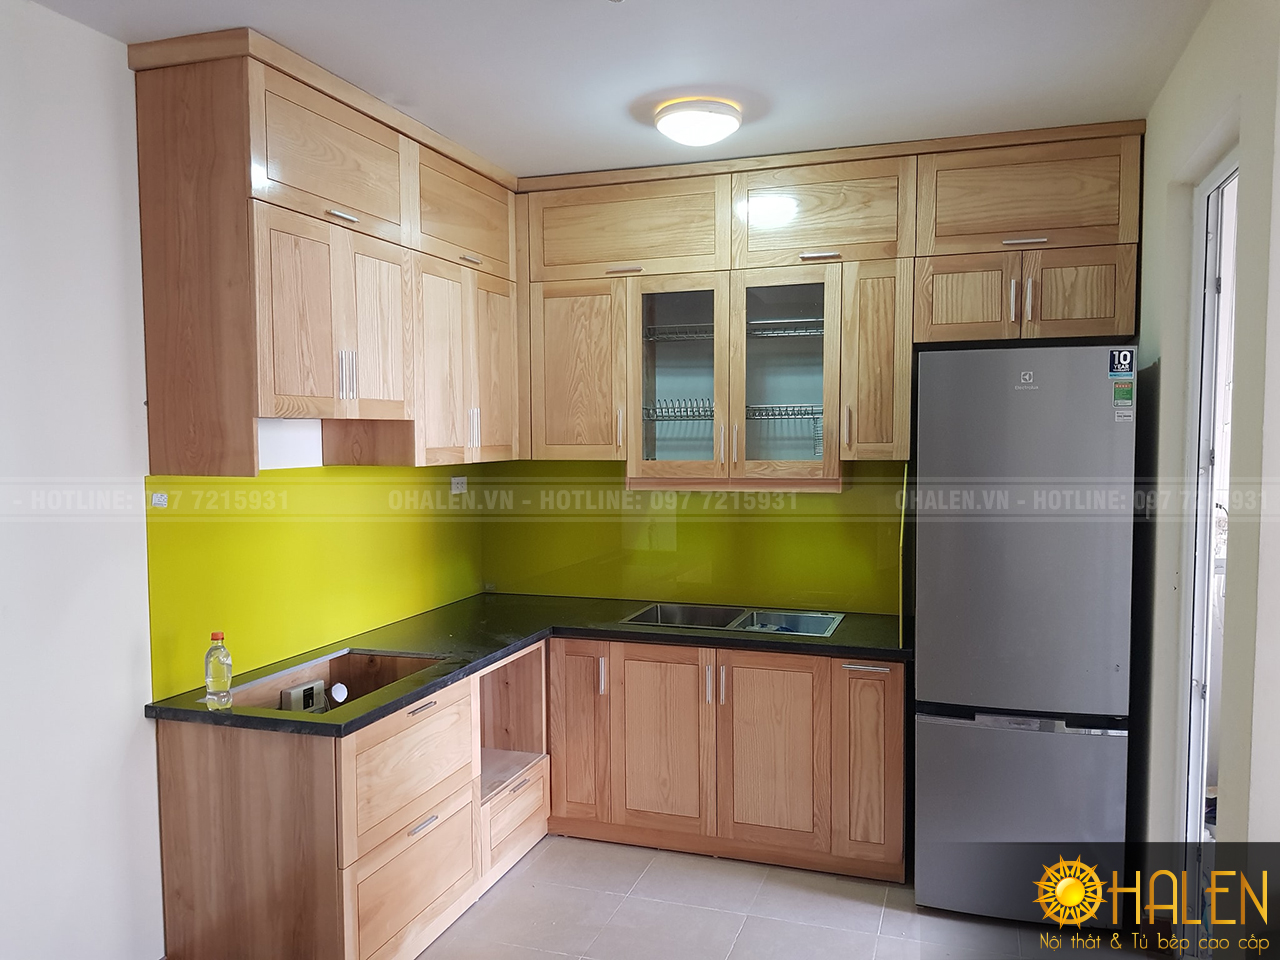 Tủ bếp gỗ sồi tự nhiên sử dụng kính ốp bếp vàng ấm cúng sự lựa chọn hoàn hảo cho gia chủ mệnh Thổ